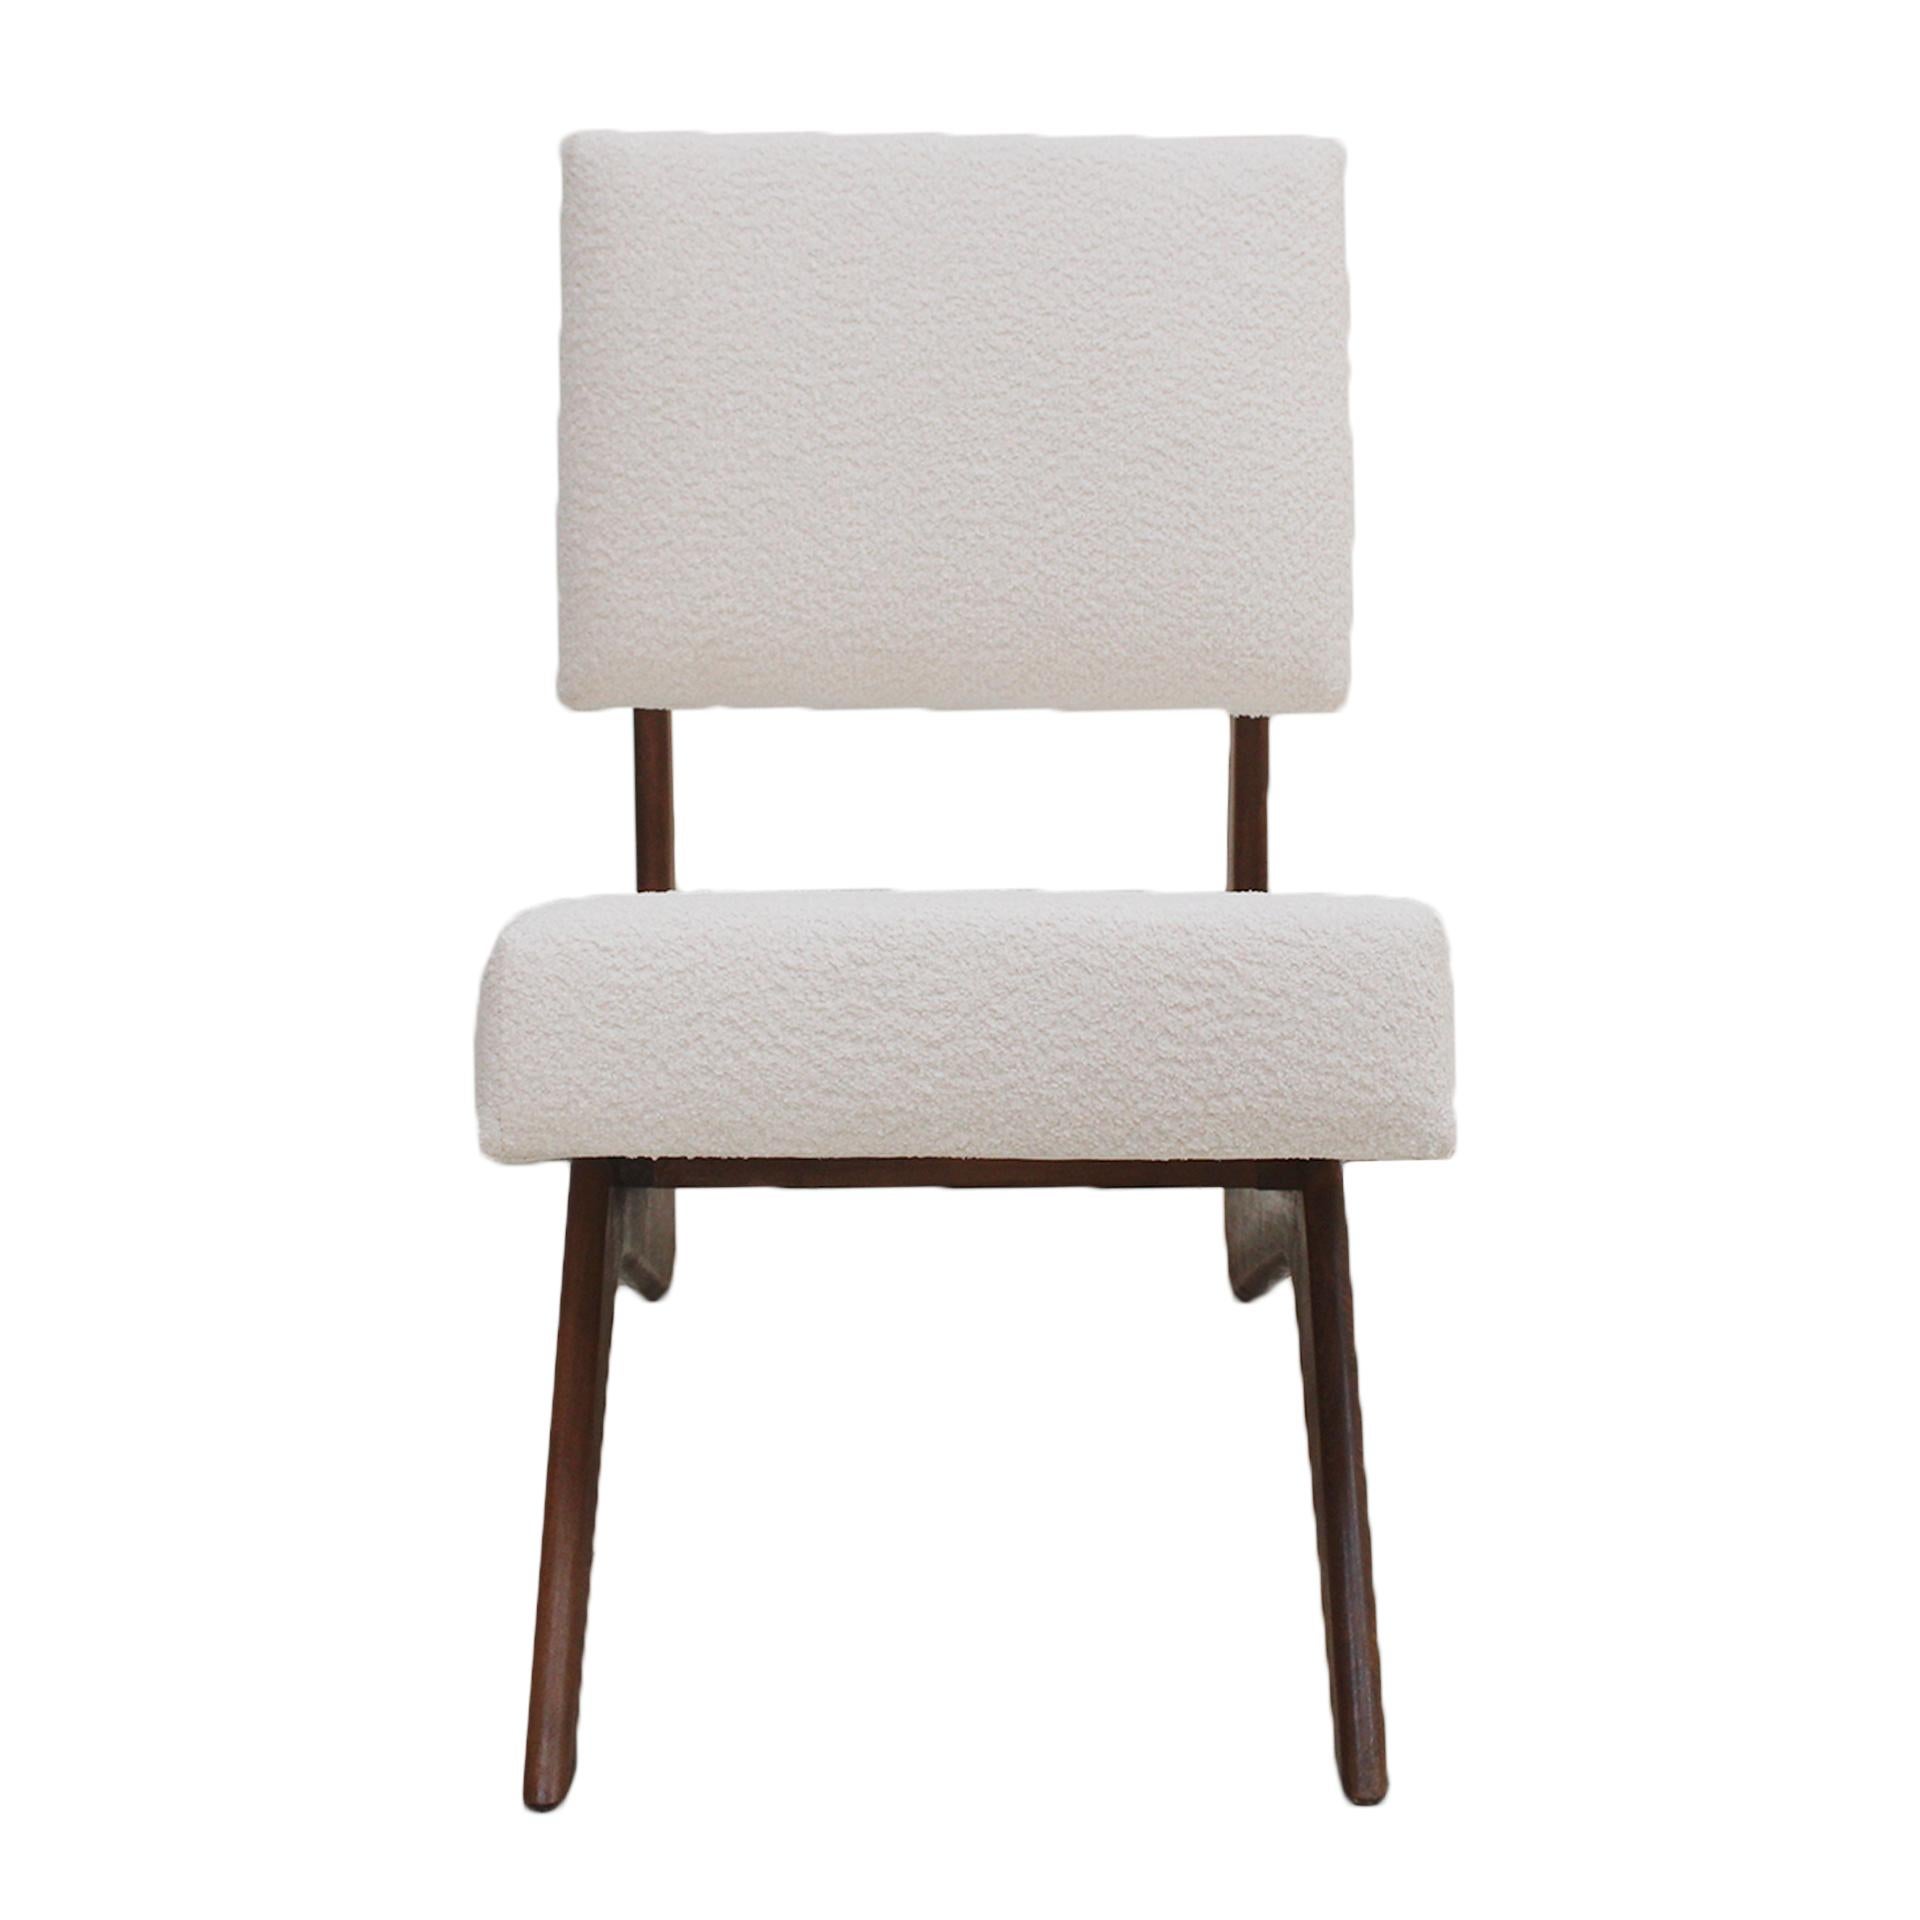 Ein Paar Loungesessel, entworfen im Stil des amerikanischen Designers Adrian Pearsall.
Die Struktur dieser Lounge-Cocktail-Sessel ist aus Walnussholz in einer schönen geschwungenen Form gefertigt und mit weißem Boucle-Stoff gepolstert.

Unser